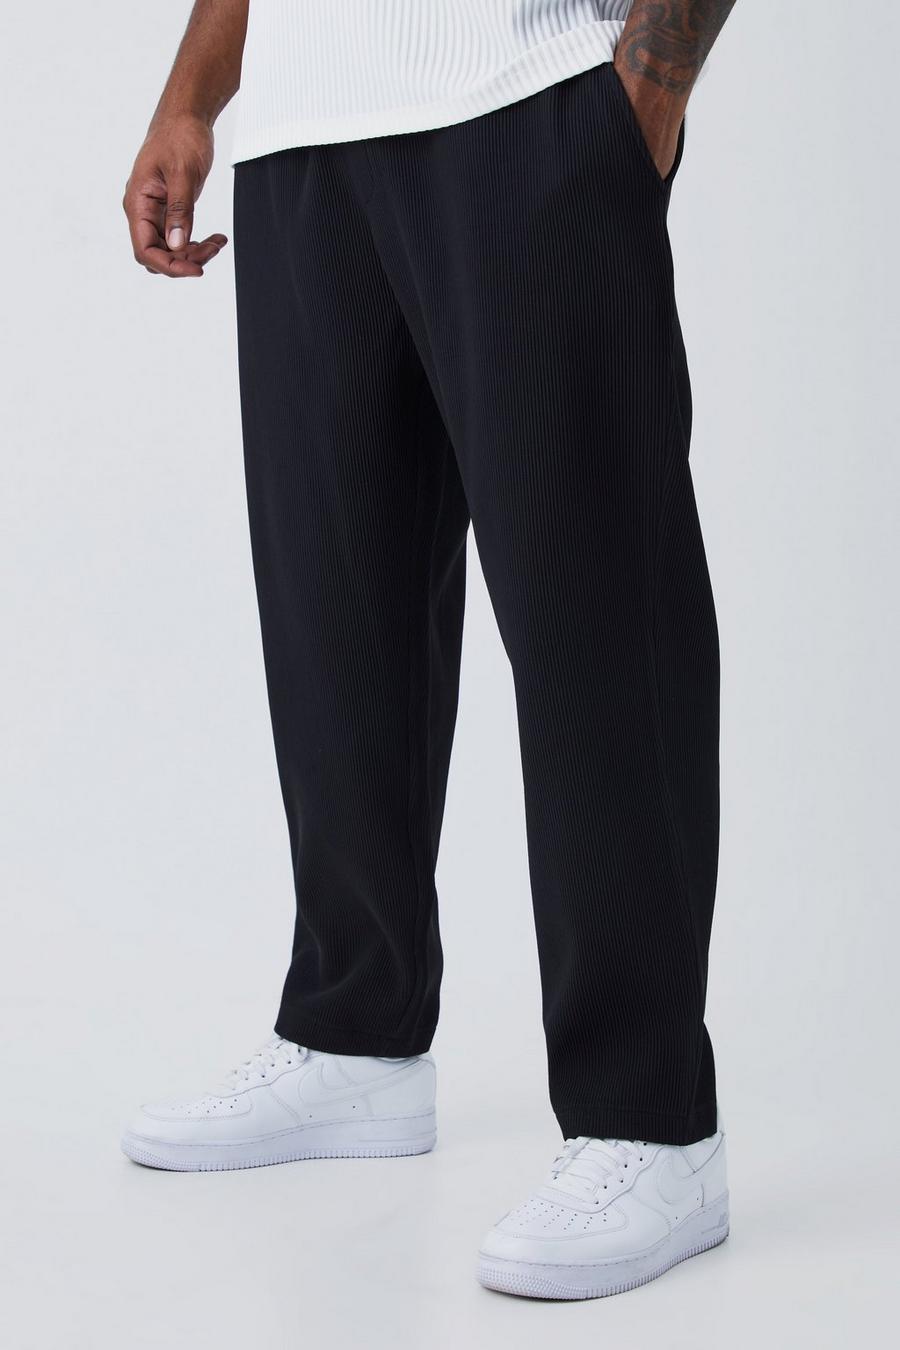 Pantalón Plus plisado ajustado con cintura elástica, Black nero